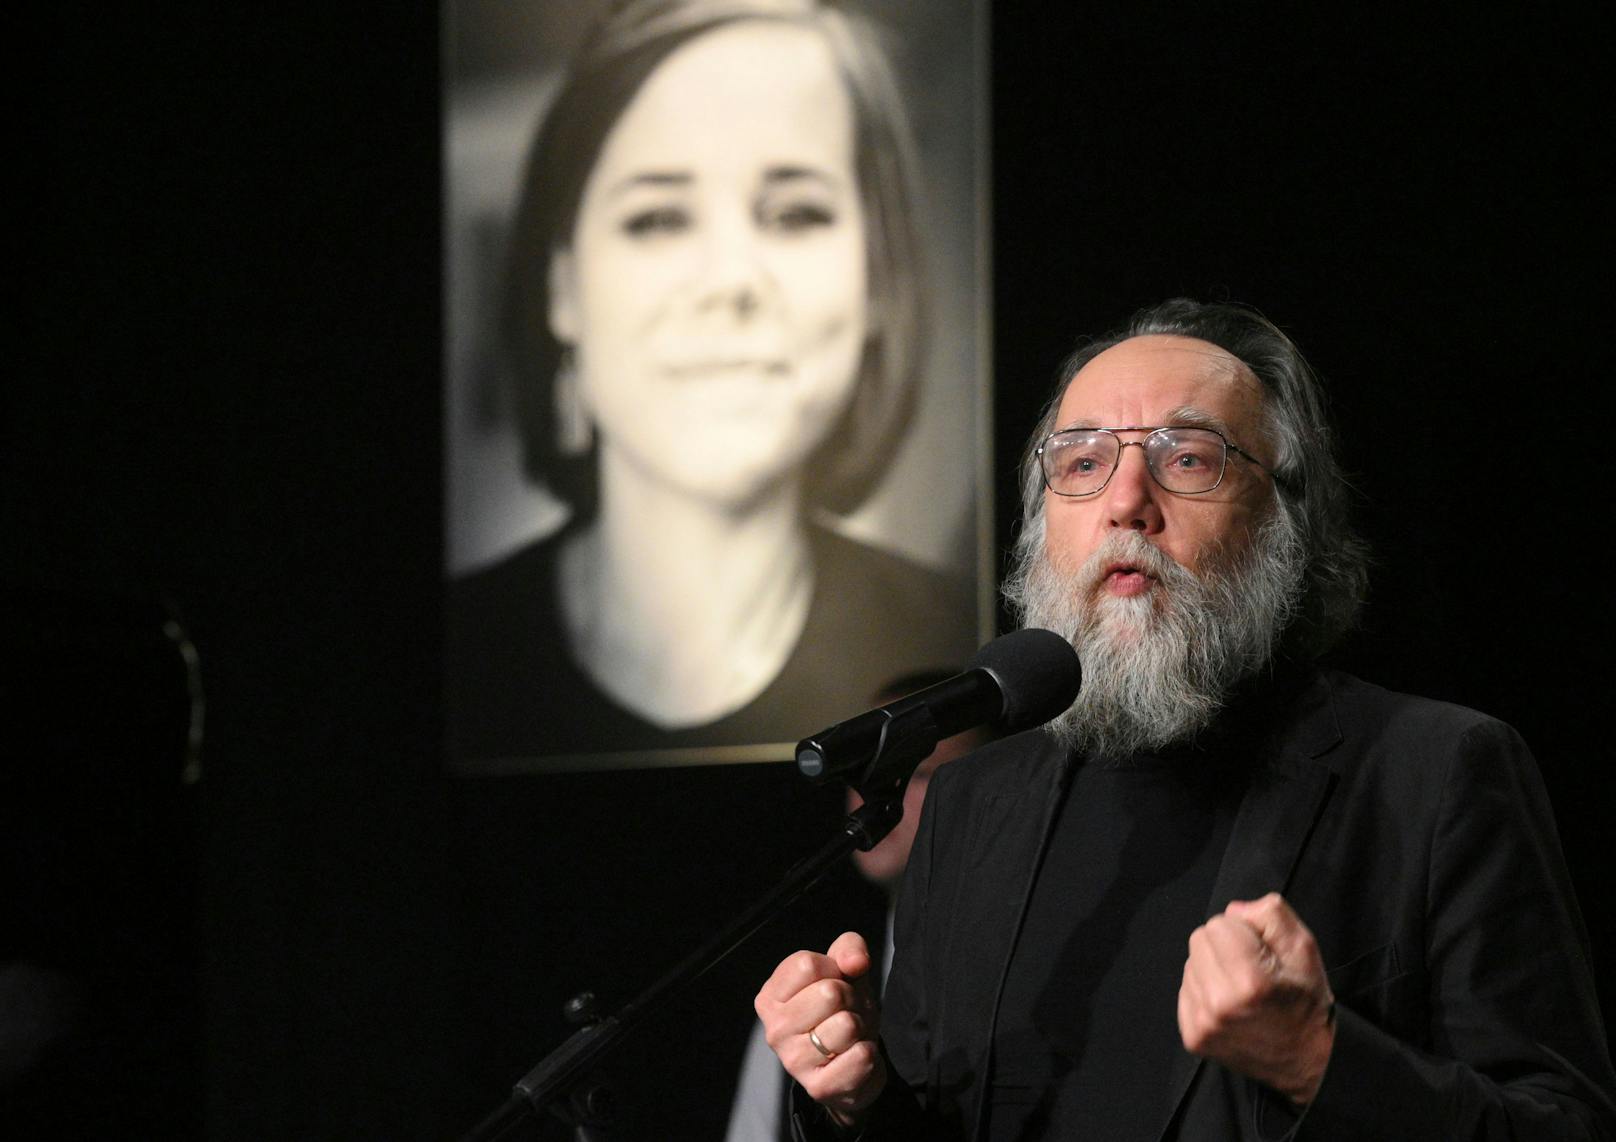 Alexander Dugin spricht während der letzten Abschiedszeremonie für seine Tochter Daria Dugina in Moskau, am Dienstag, 23. August 2022.